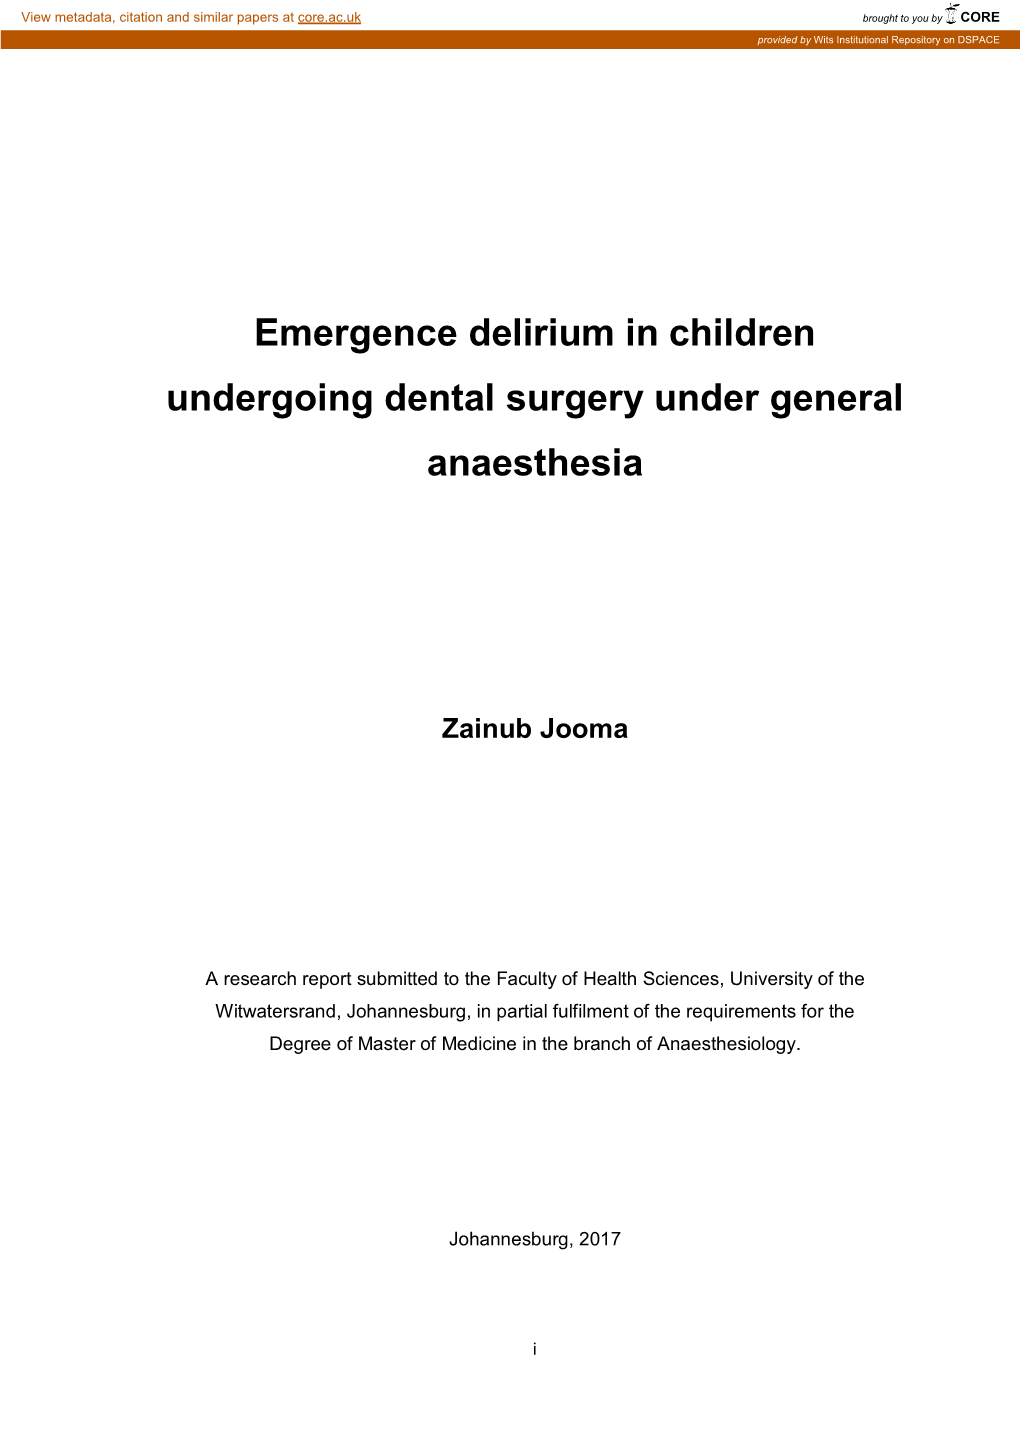 Emergence Delirium in Children Undergoing Dental Surgery Under General Anaesthesia